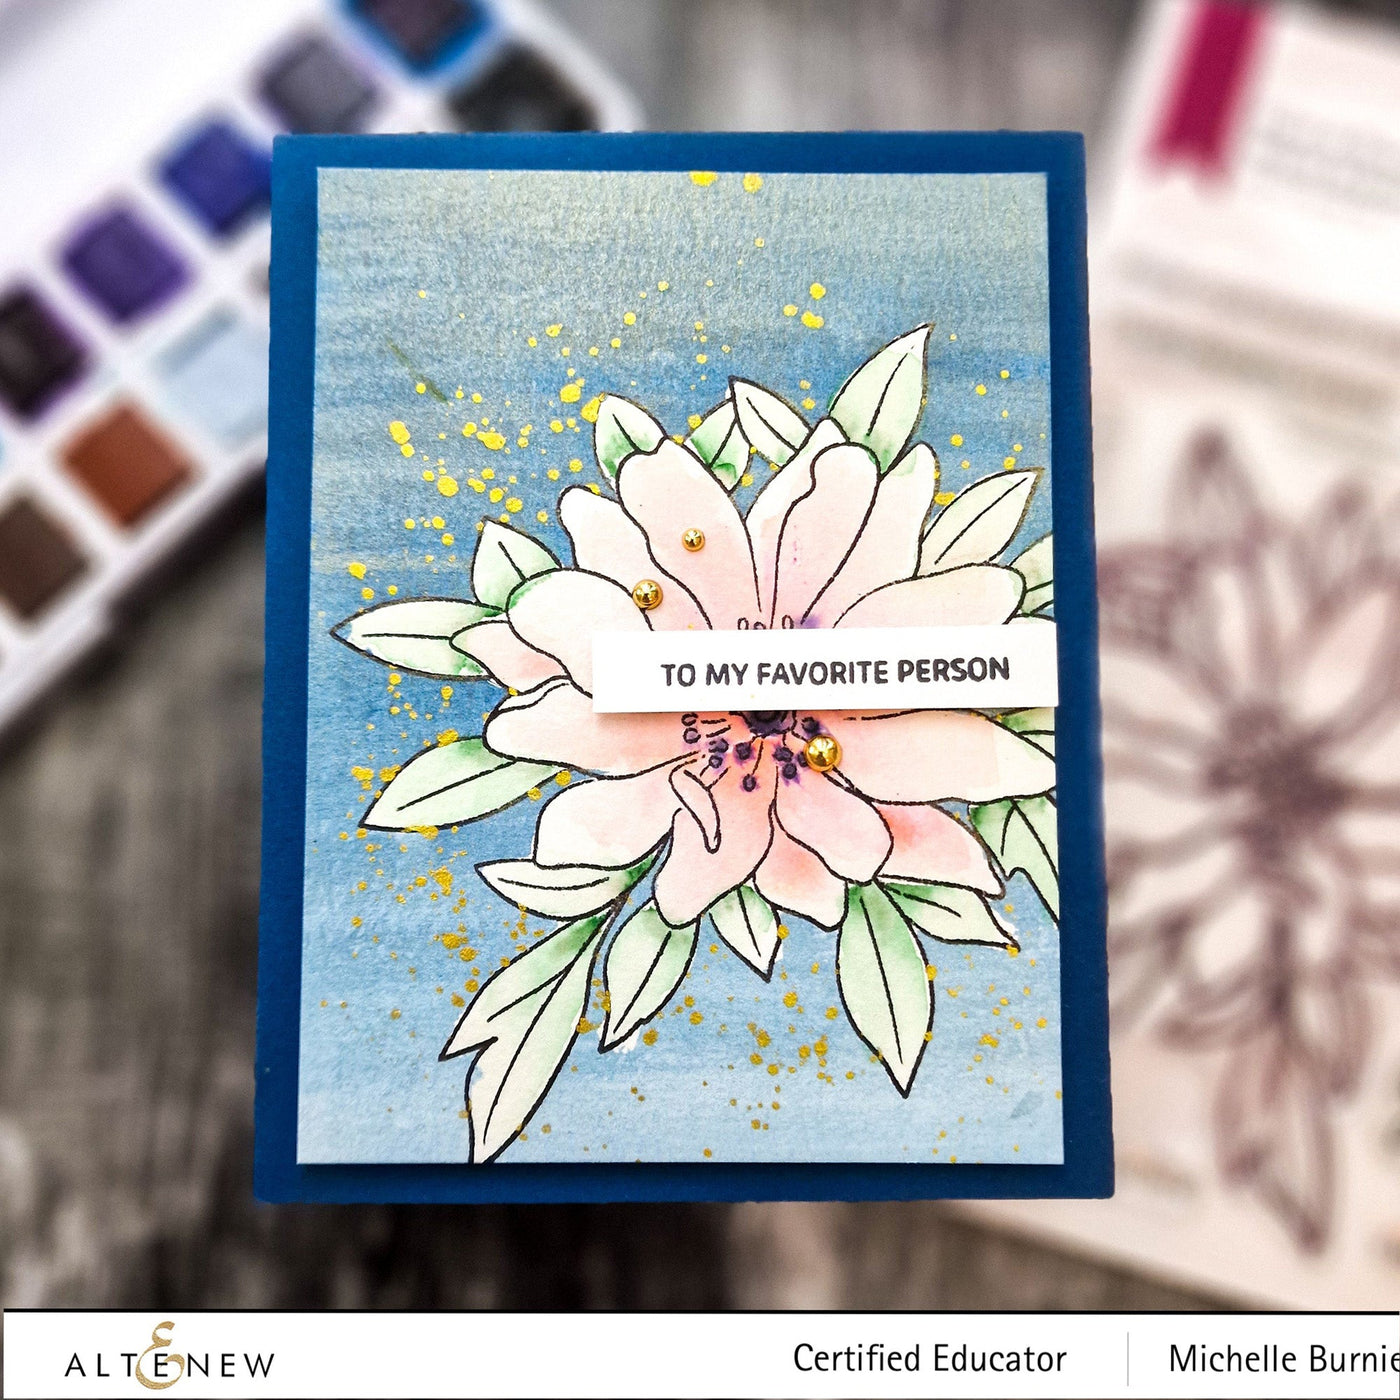 Stamp & Coloring Pencil Bundle Paint-A-Flower: Wood Anemone & Woodless Coloring Pencils Bundle